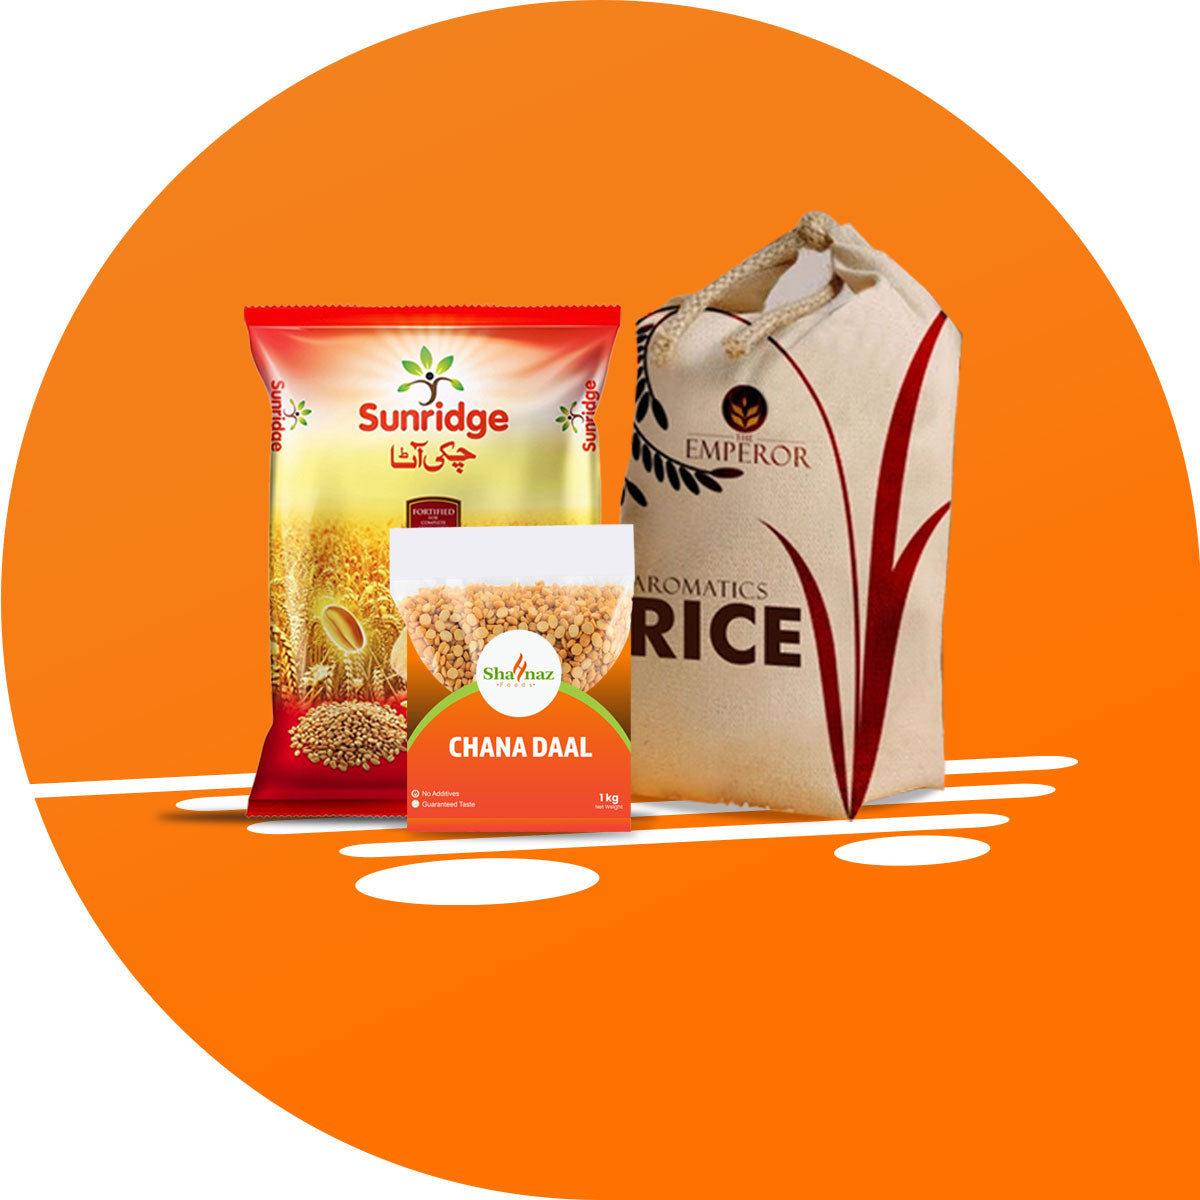 Rice, Flour & Pulses